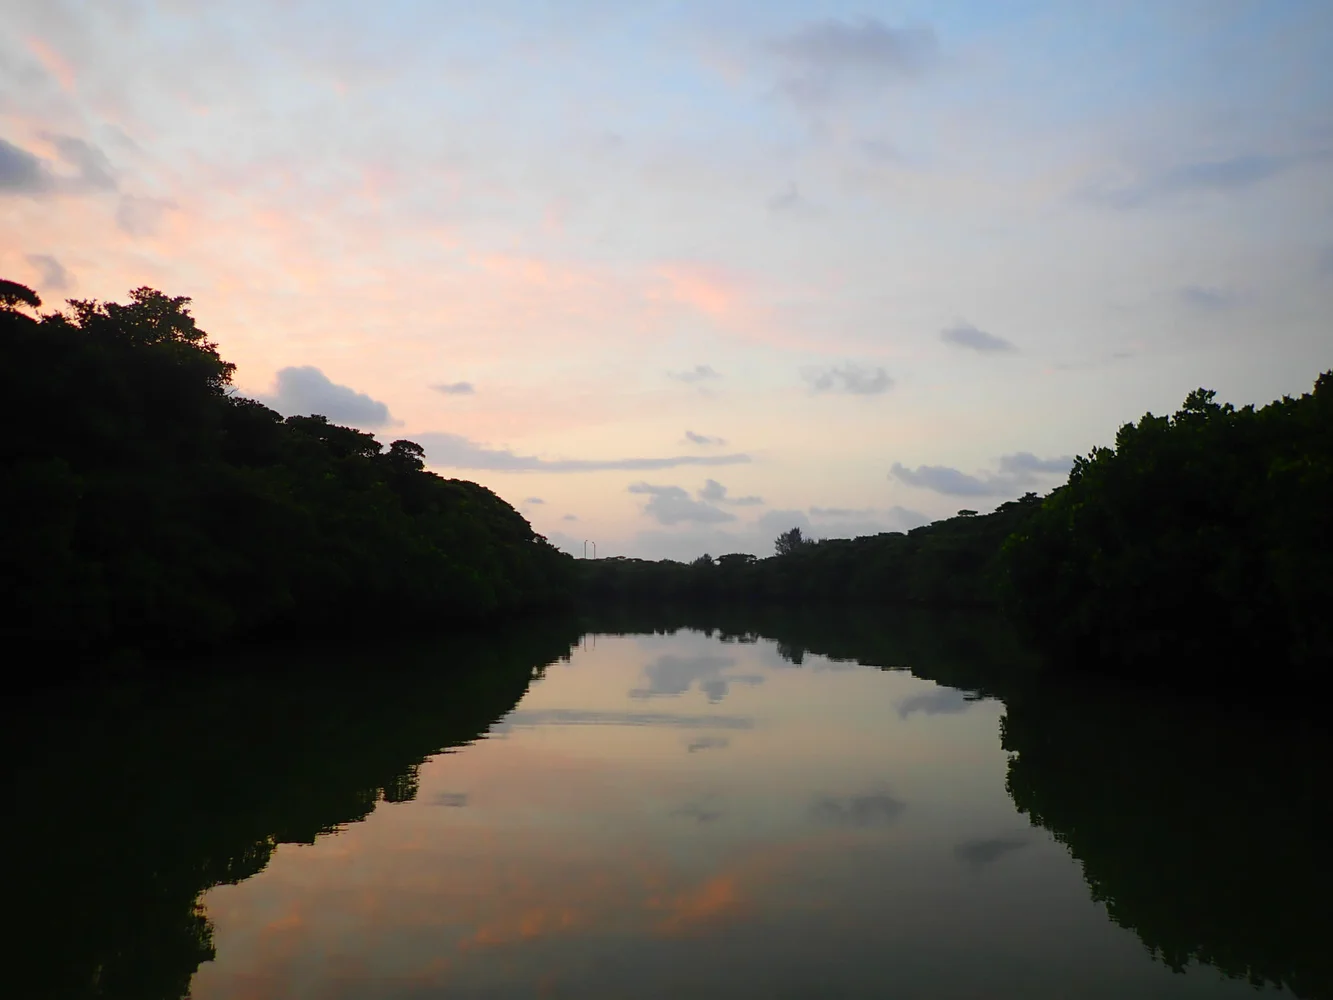 Ishigaki Island Mangrove Forest SUP or Canoeing Sunrise Tour